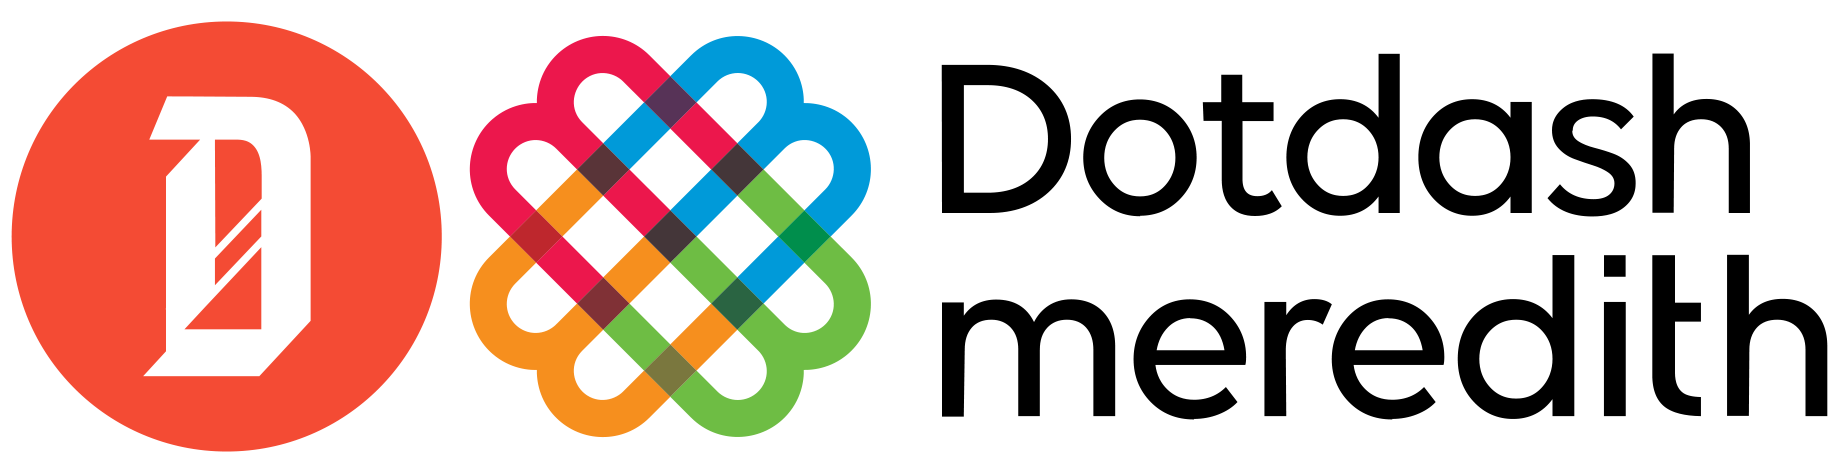 Dotdash Meredith Logo Color (1) (1).png